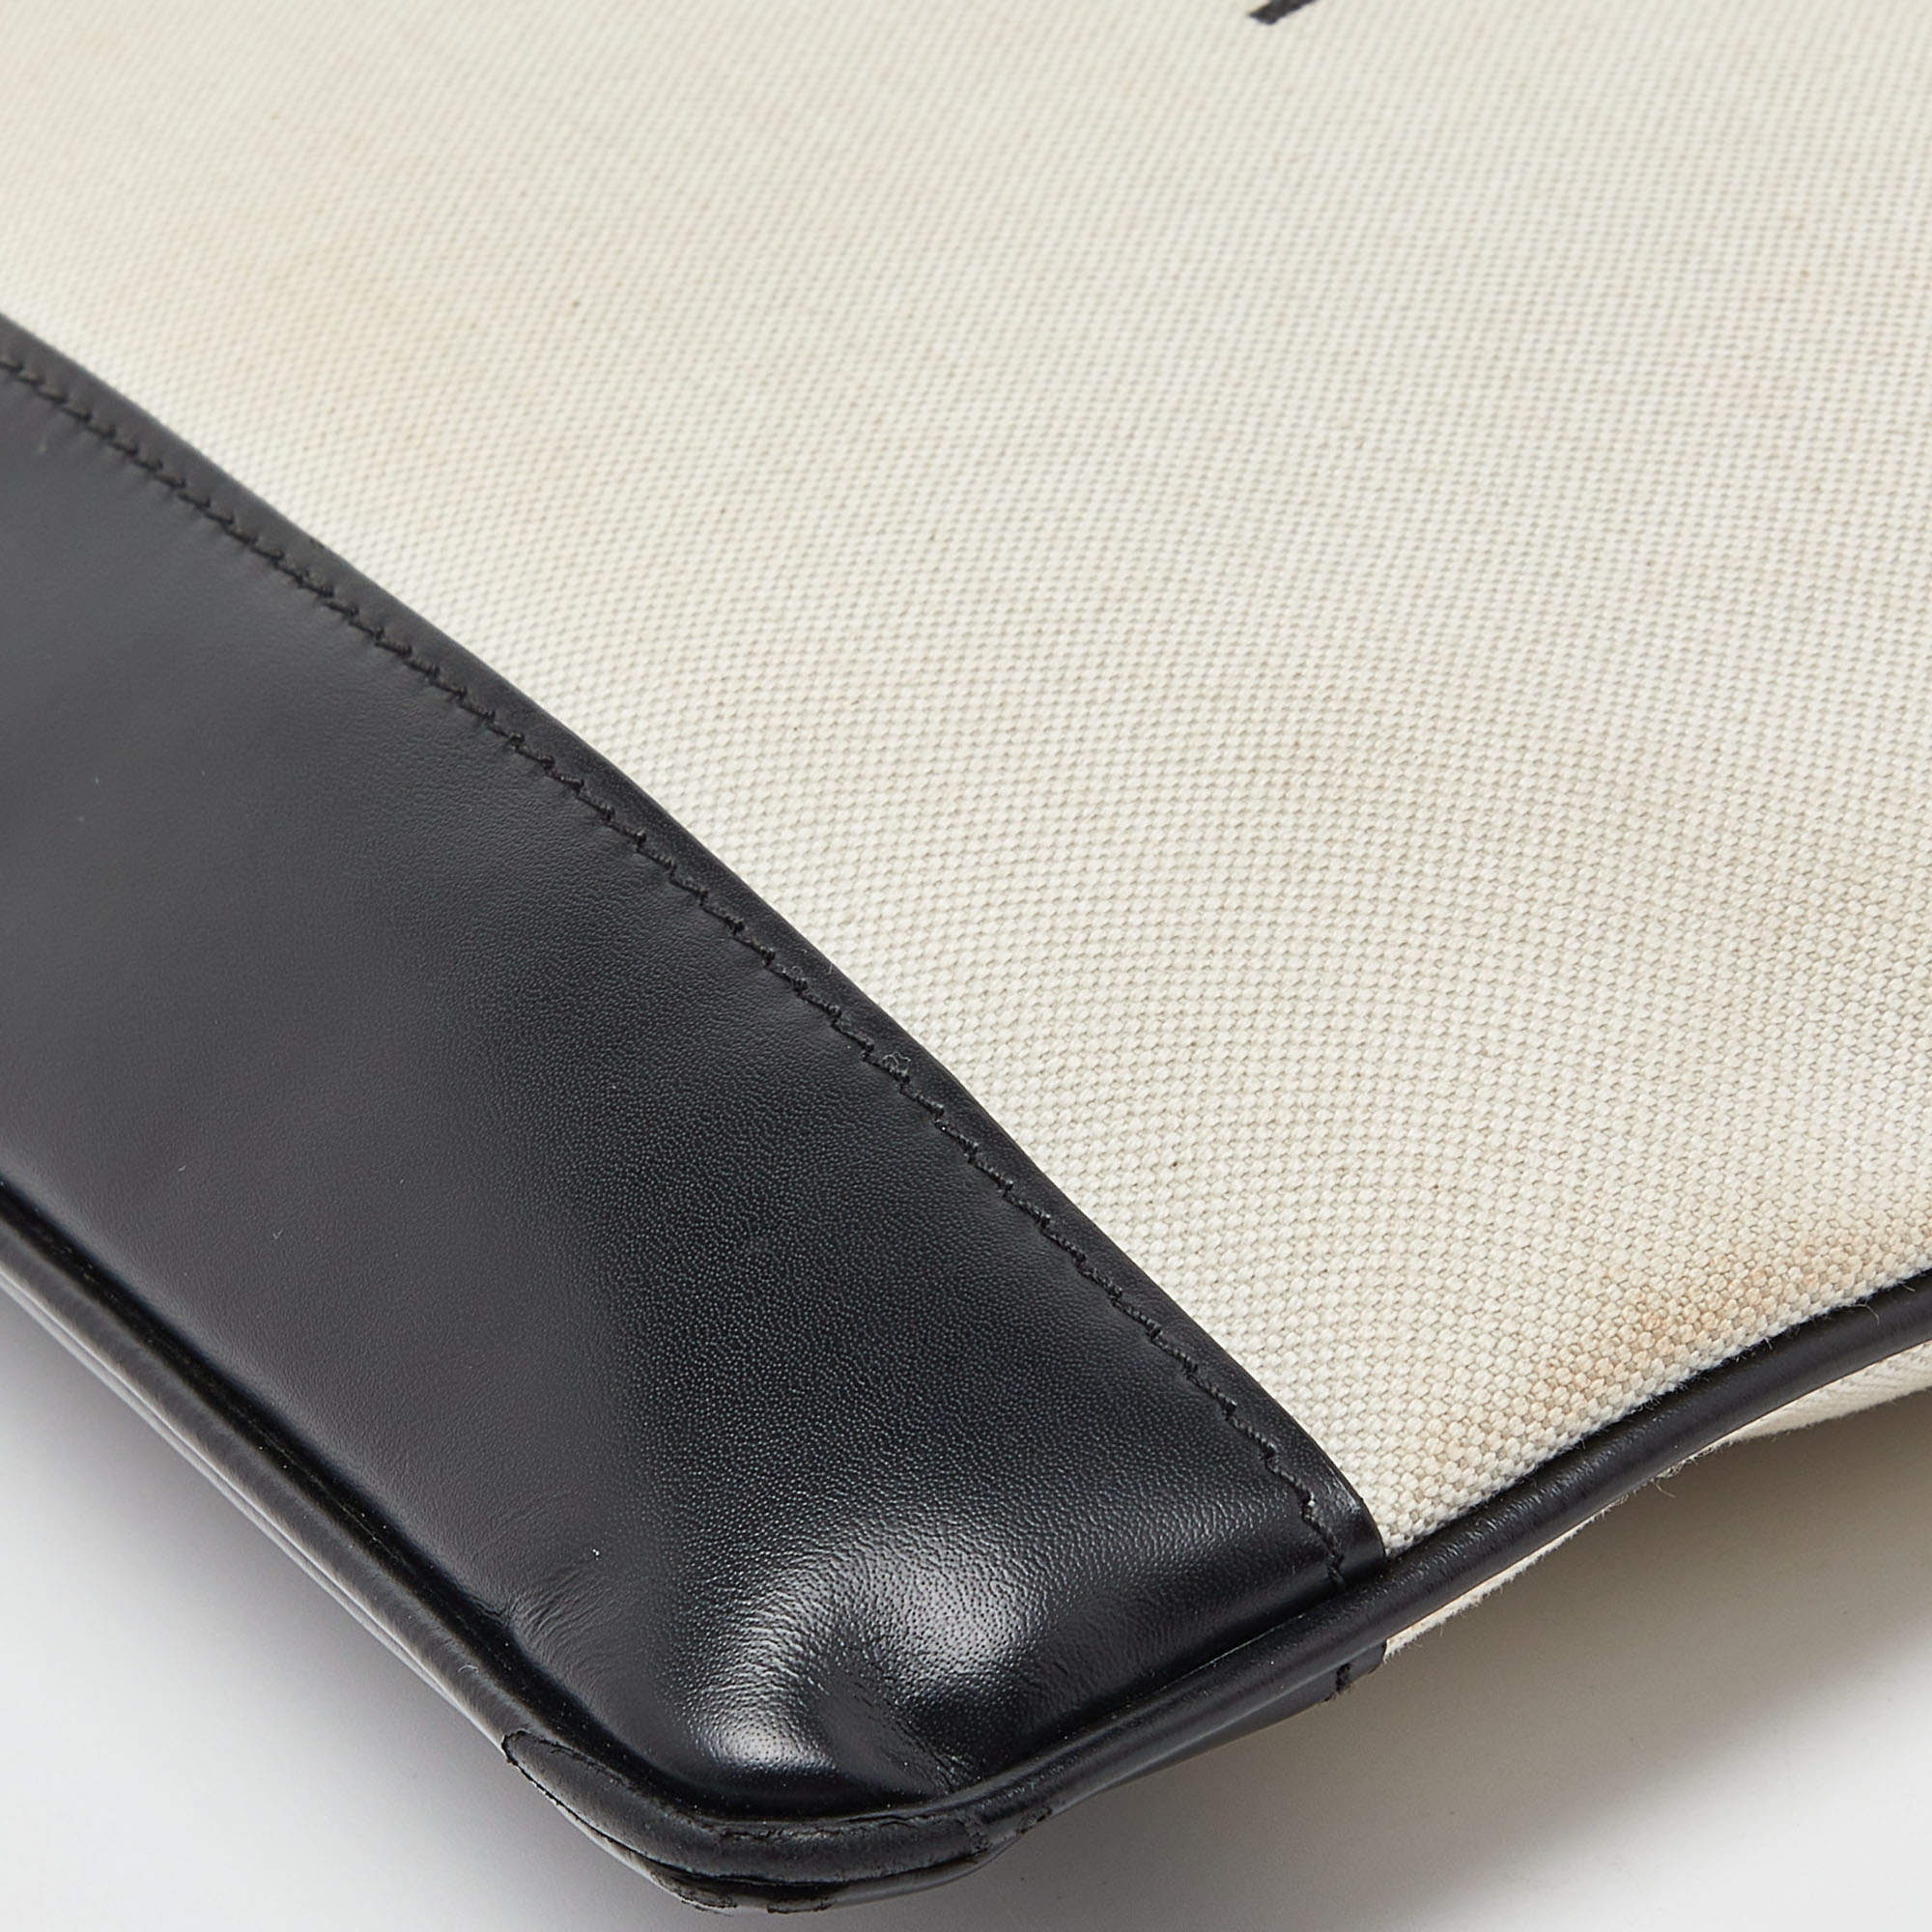 Balenciaga Black/Cream Canvas and Leather Logo Zip Pouch